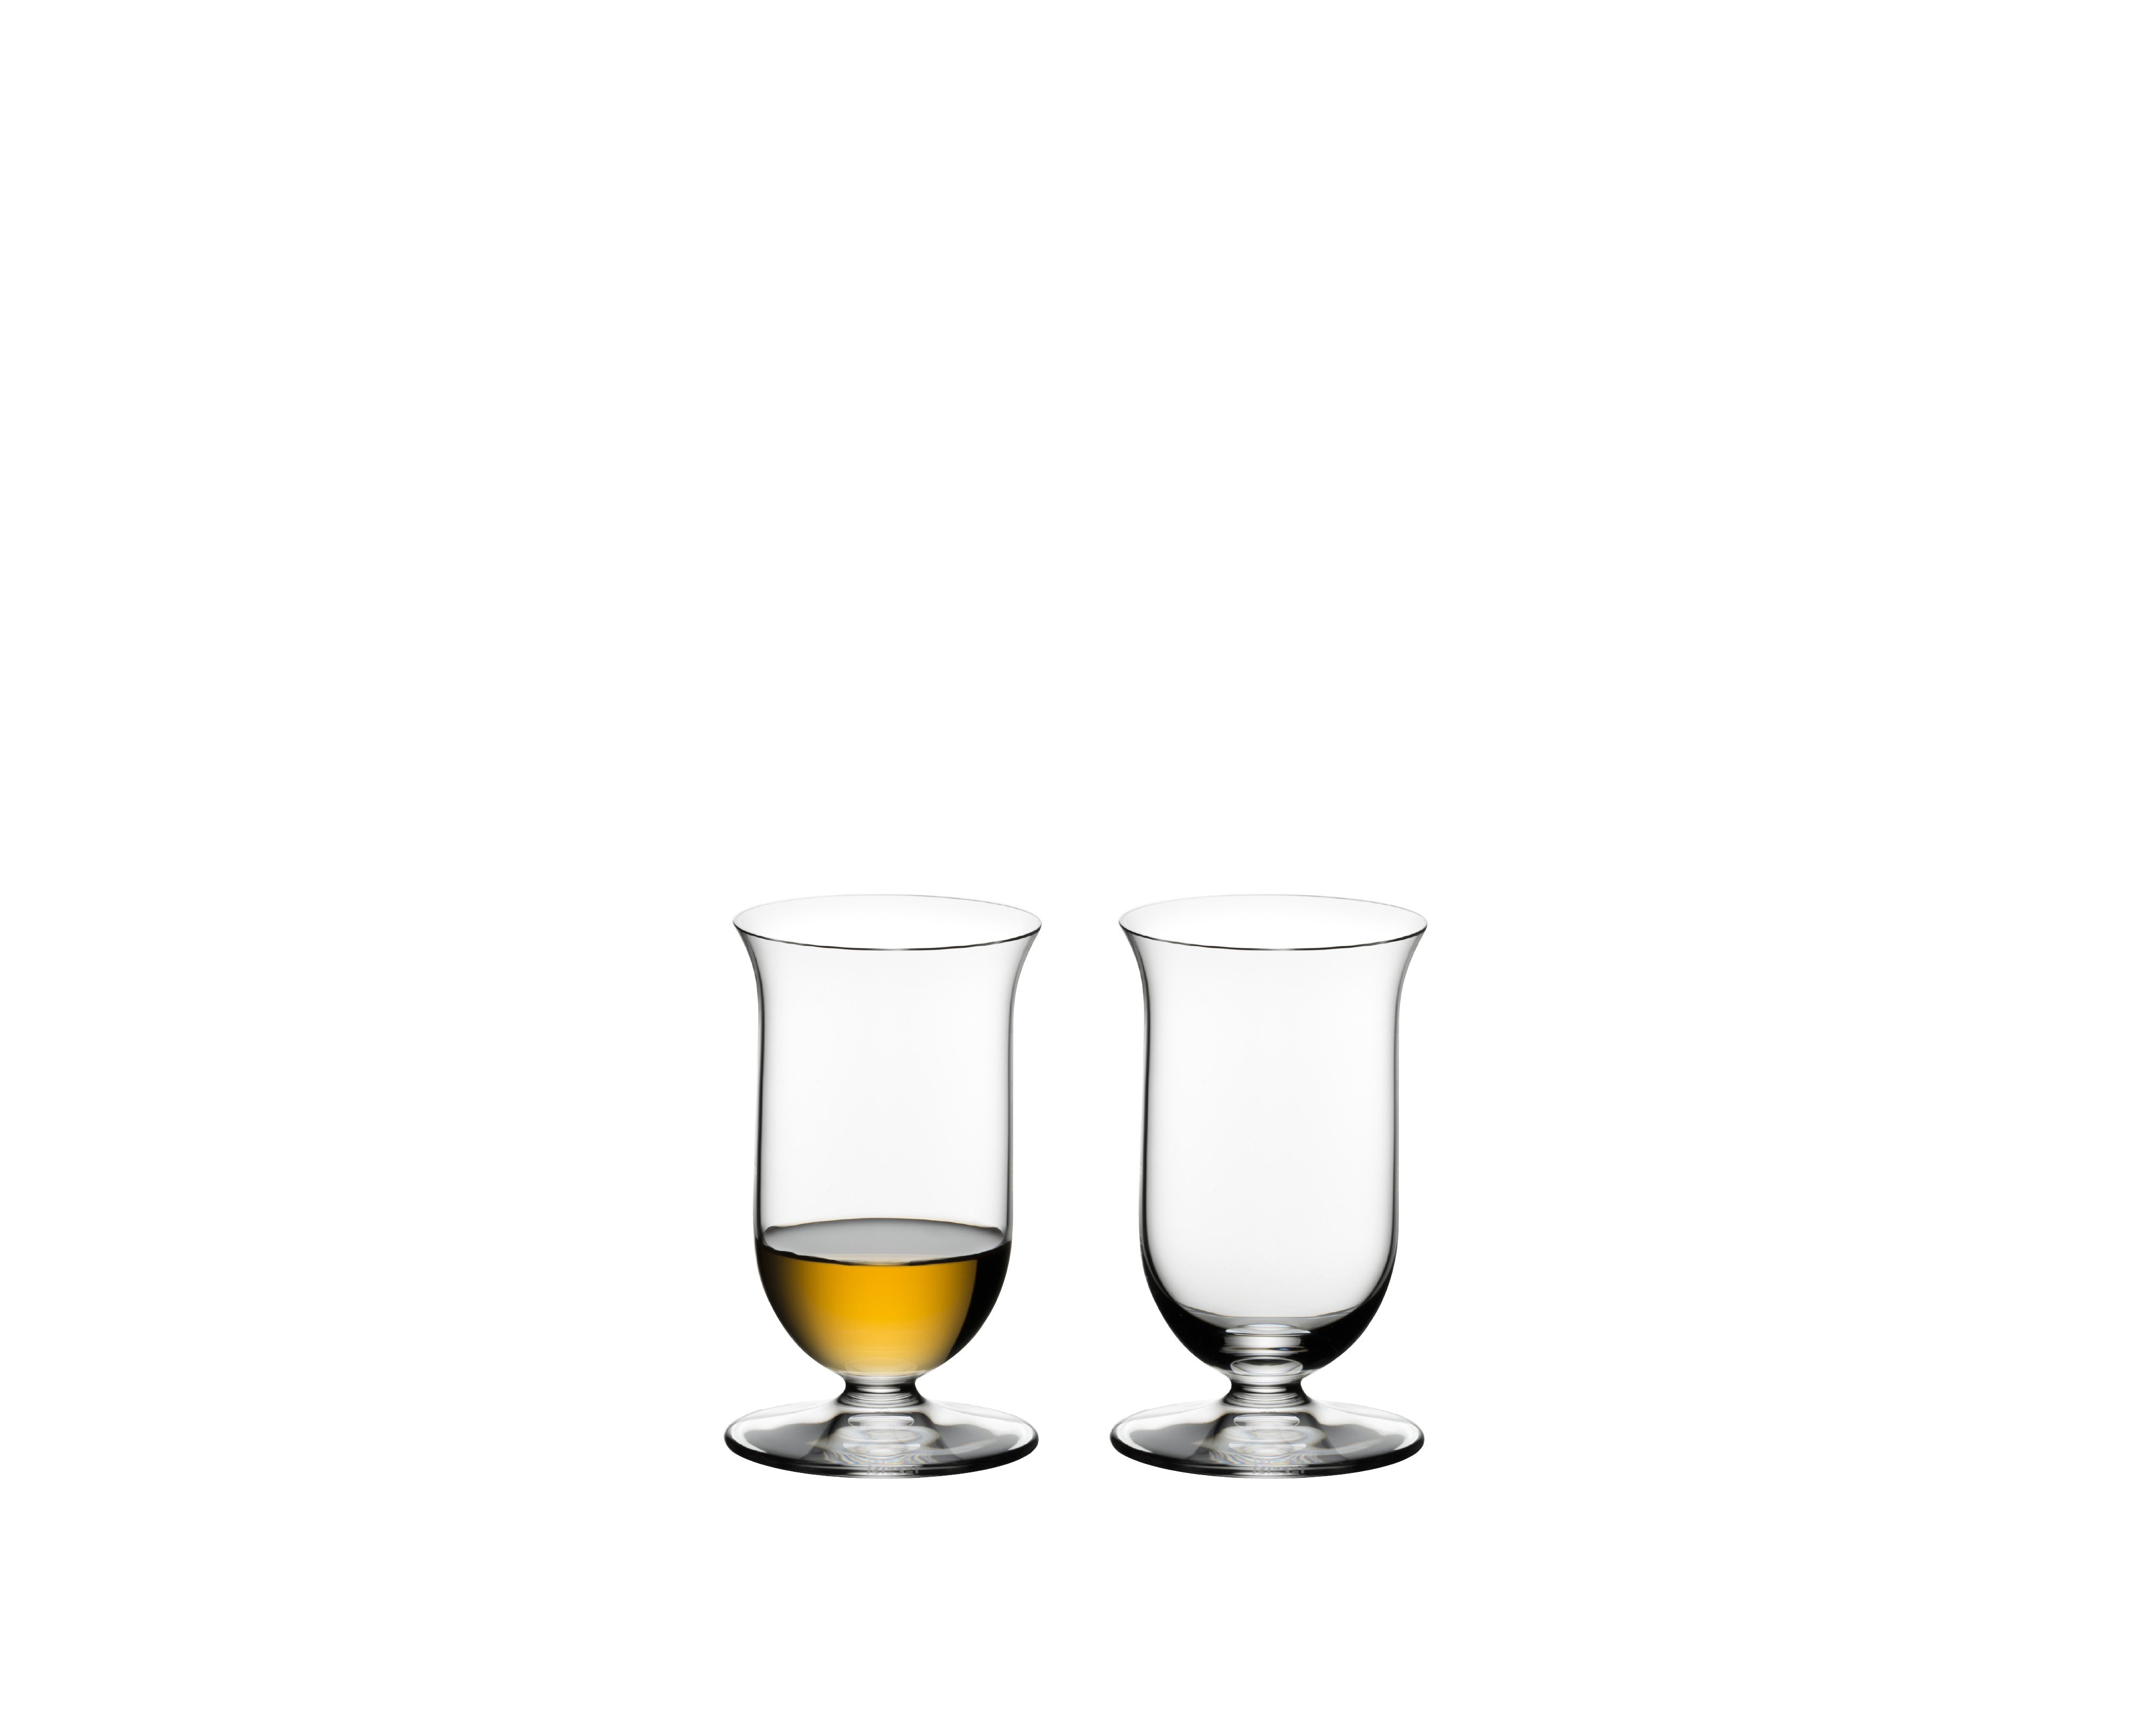 19.5x10.2x19.4 cm 2 Unidades Cristal Riedel Vinum Single Malt Copa de Whisky 